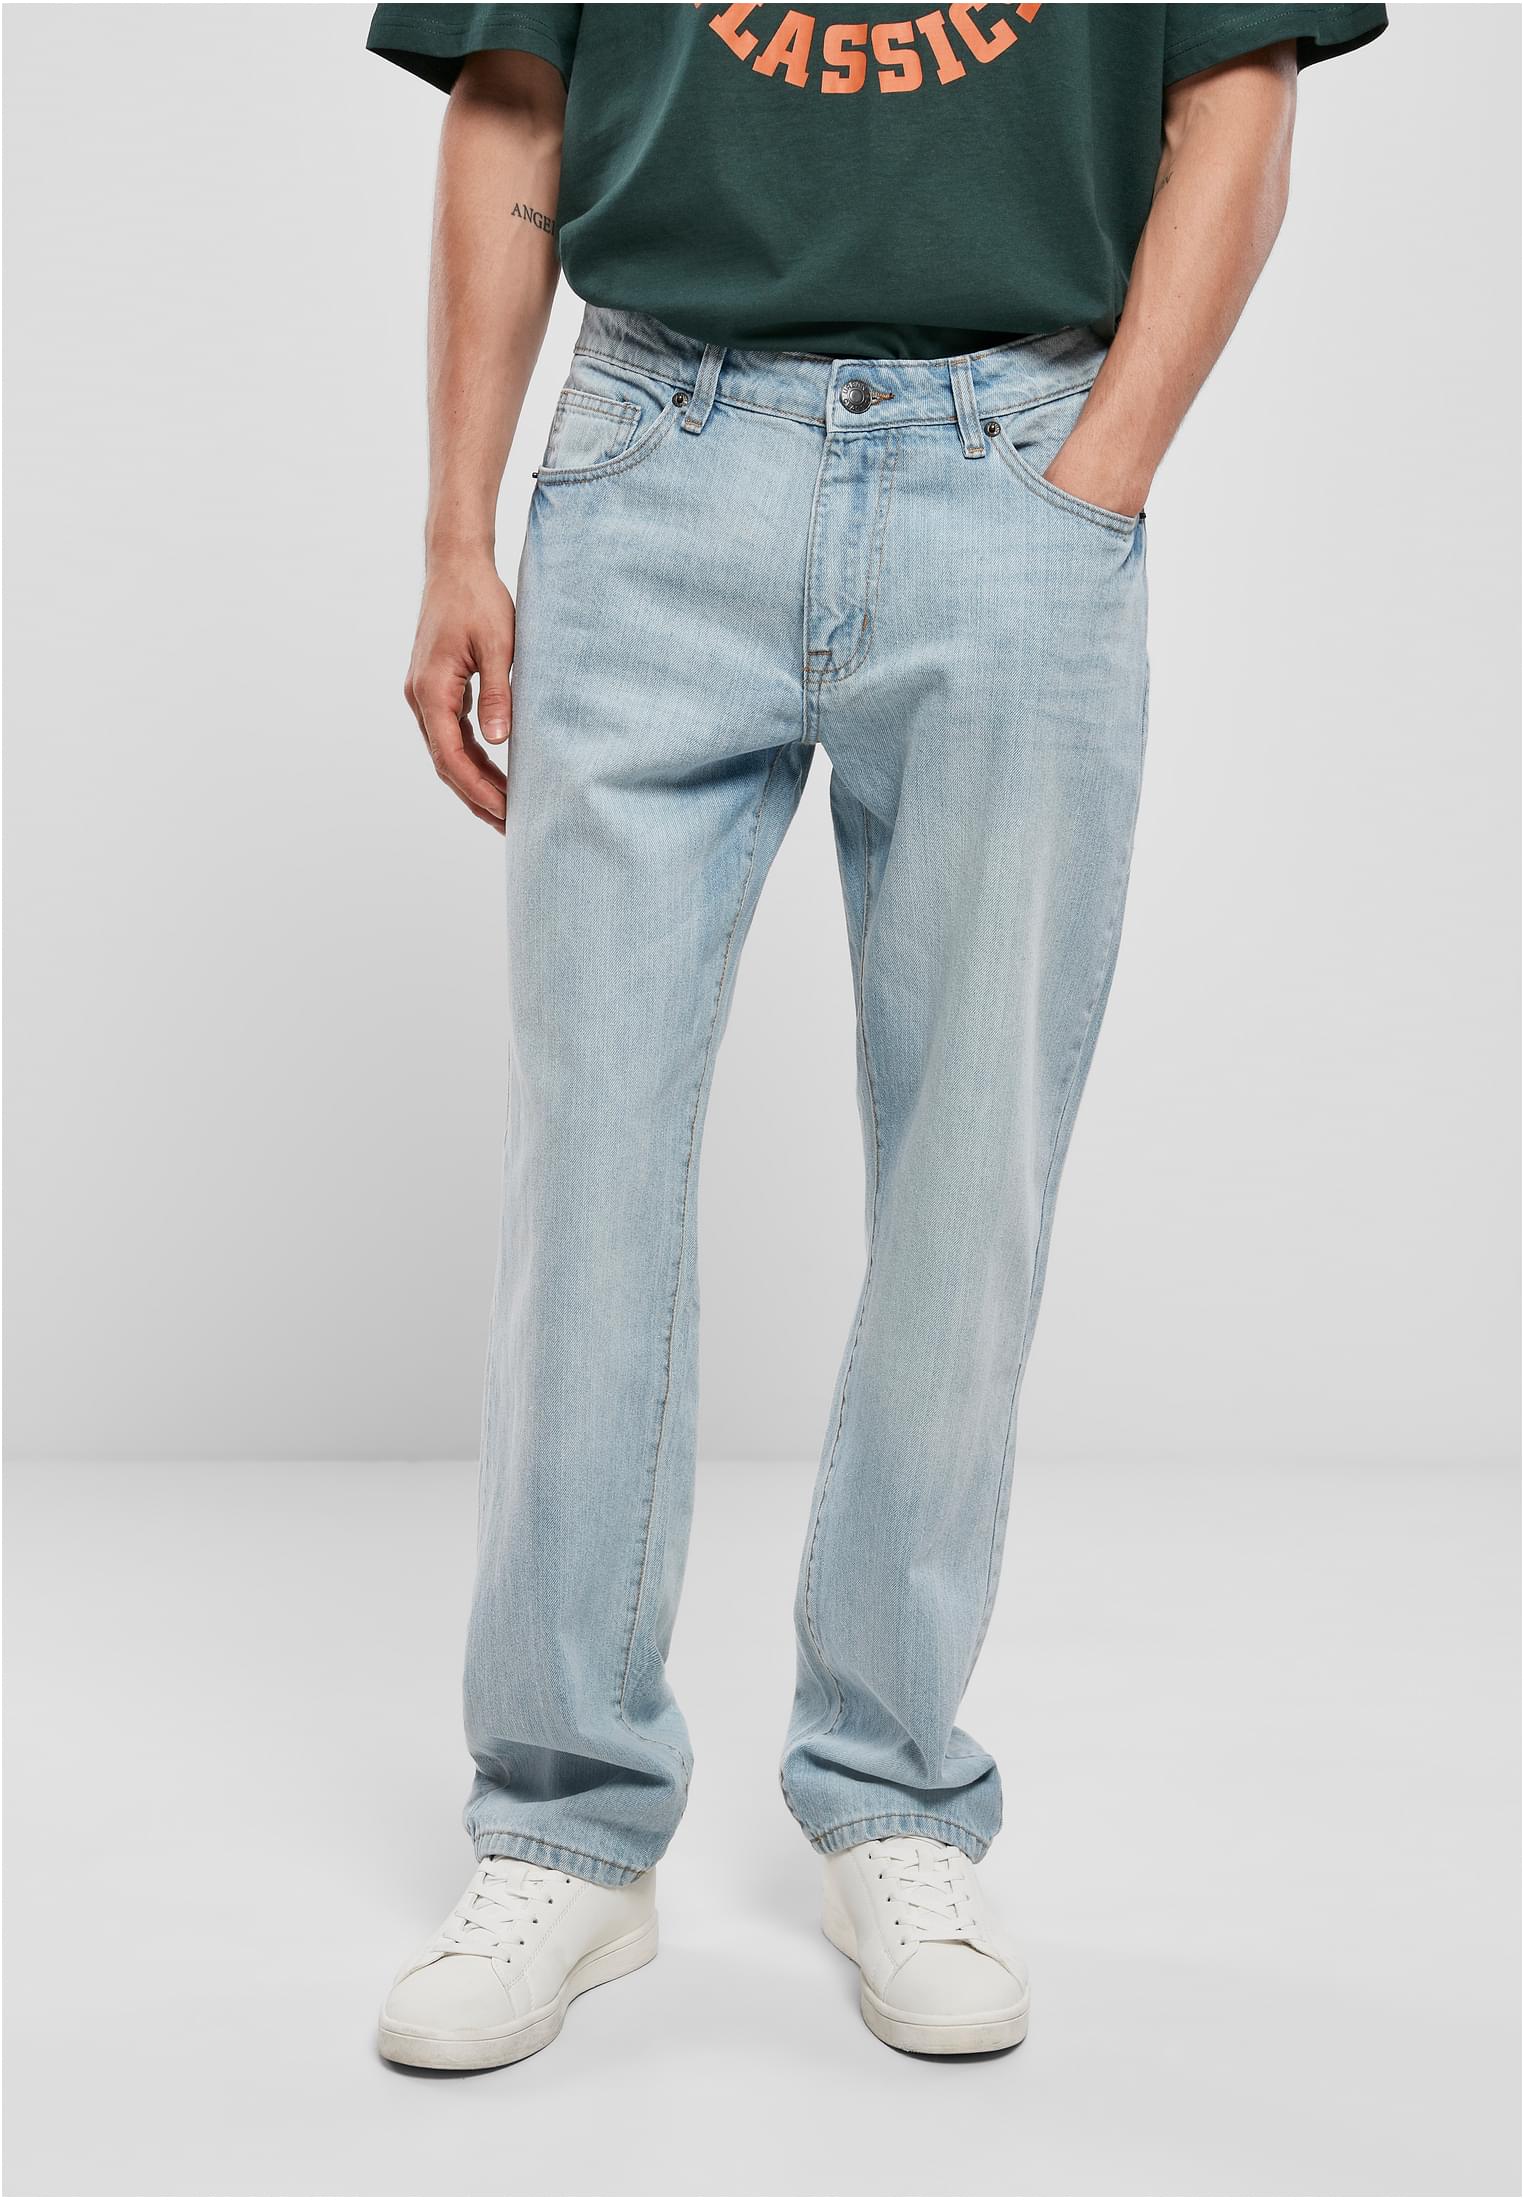 Urban Classics Loose Fit Jeans Pantalones para Hombre